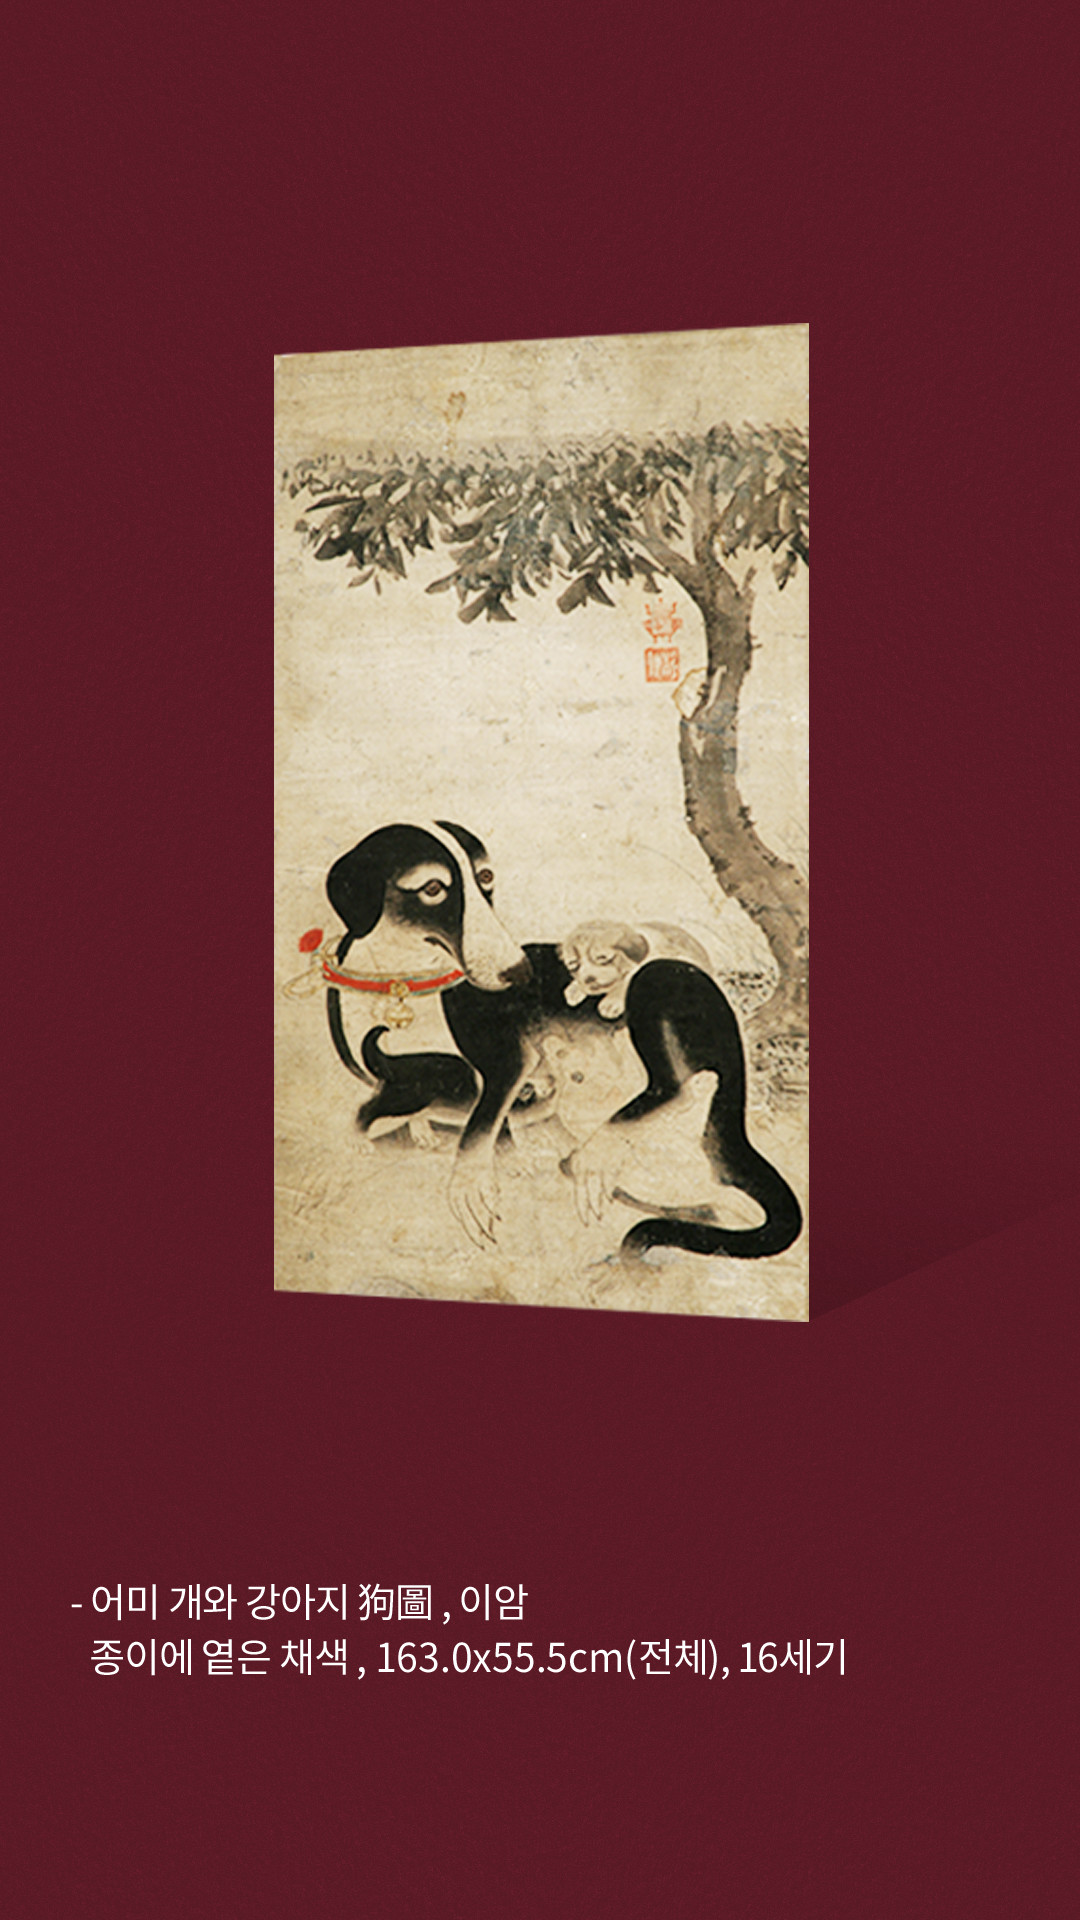 어미 개와 강아지 狗圖 ,이암 종이에 옅은 채색 , 163.0x55.5cm(전체), 16세기